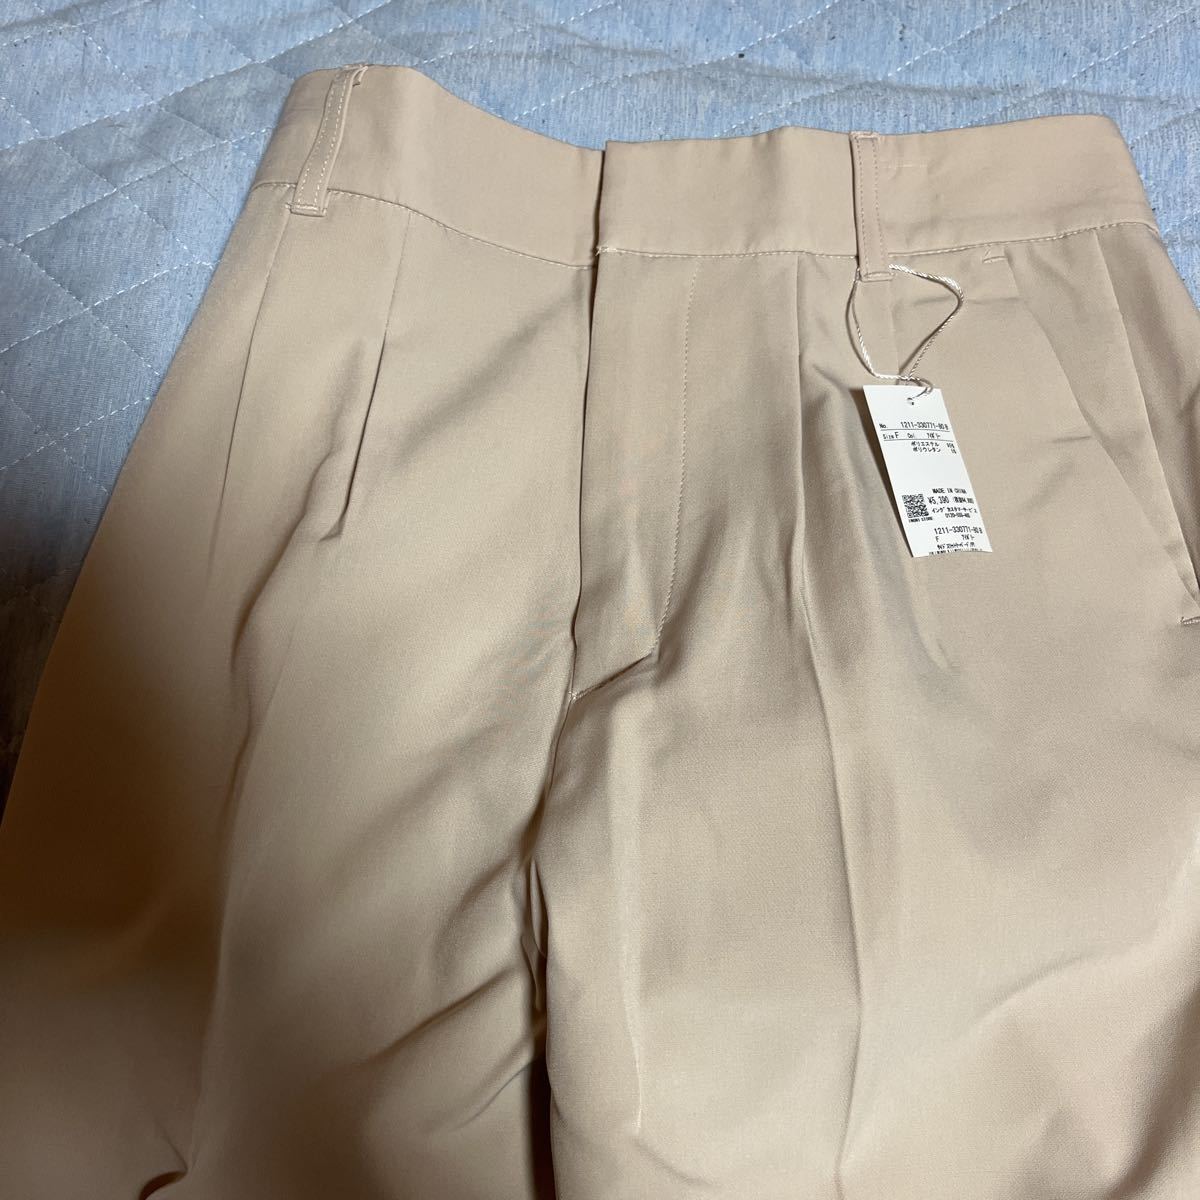  с биркой INGNI слоновая кость брюки размер F обычная цена 5390 иен 